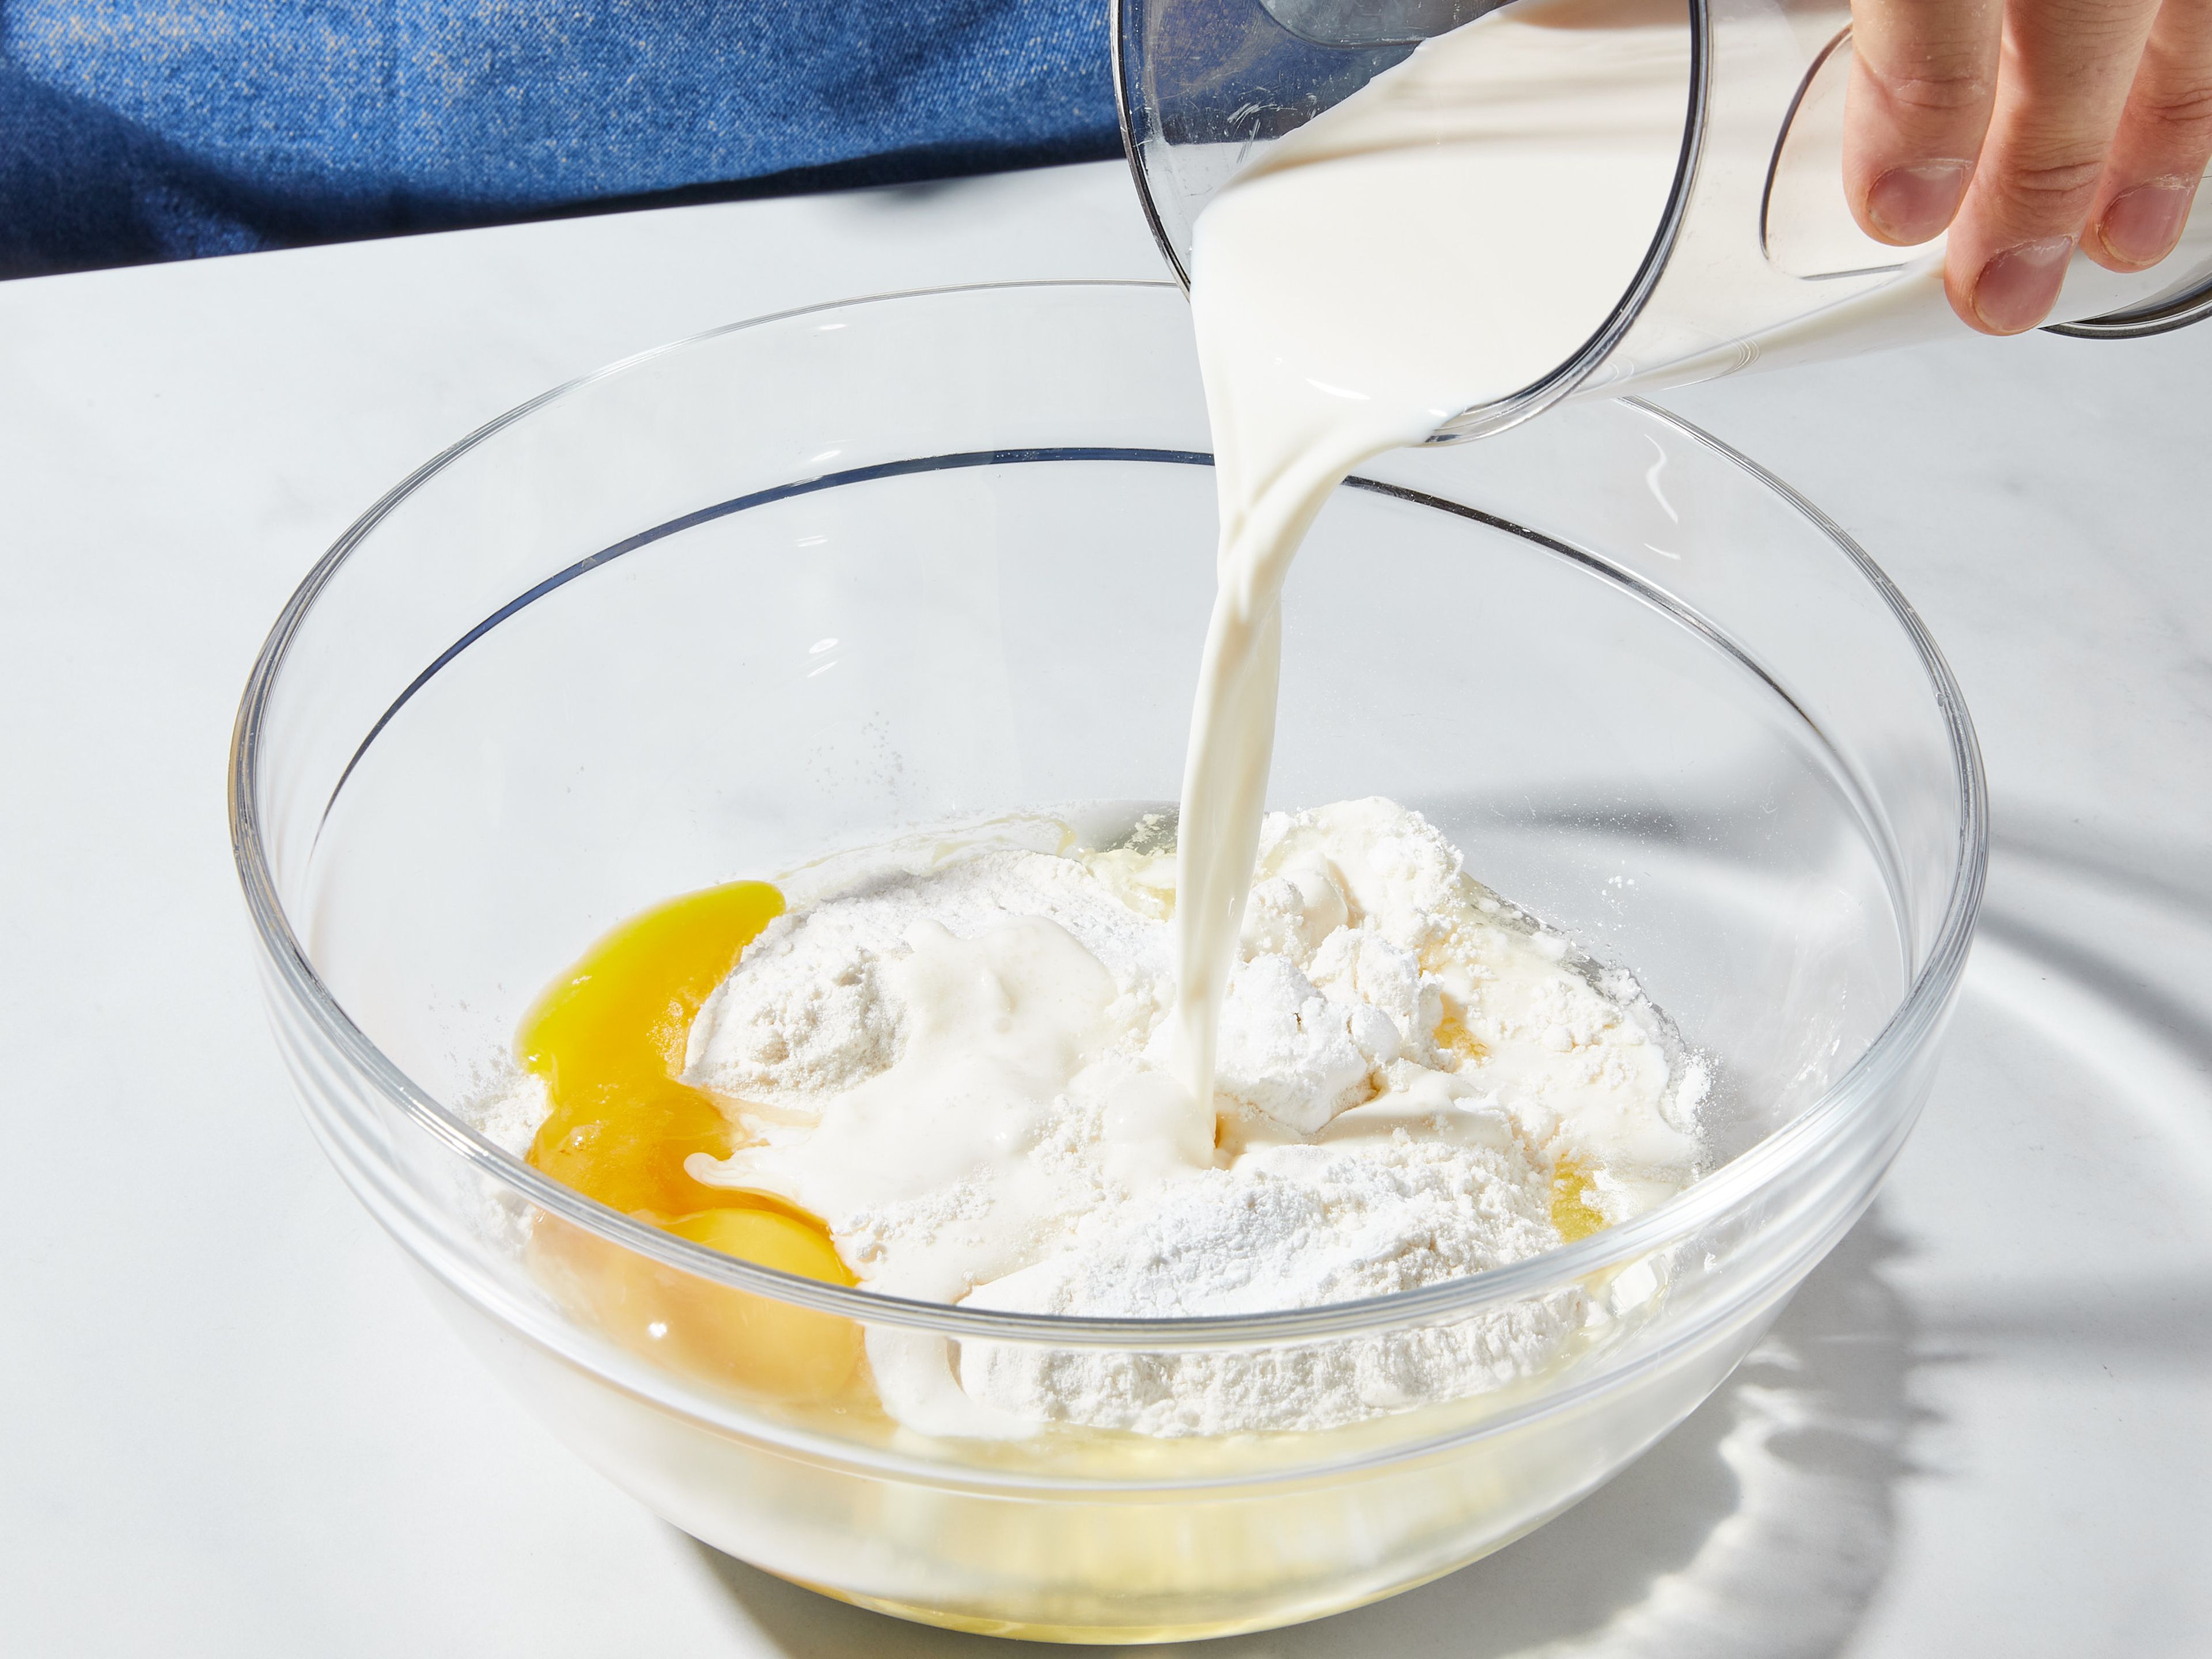 Den Backofen auf 180°C Ober-/Unterhitze vorheizen. Mehl, Backpulver, Zucker und Salz in einer großen Rührschüssel mischen und beiseitestellen. Eier und Milch in einem kleinen Messbecher verquirlen. Dann die Hälfte der geschmolzenen Butter einrühren. Die Milchmischung vorsichtig in die trockenen Zutaten einrühren, aber nur so viel, dass alles gerade so vermengt ist (ein paar kleine Klümpchen dürfen sein). Wenn der Teig zu dickflüssig erscheint, etwas mehr Milch zugeben.